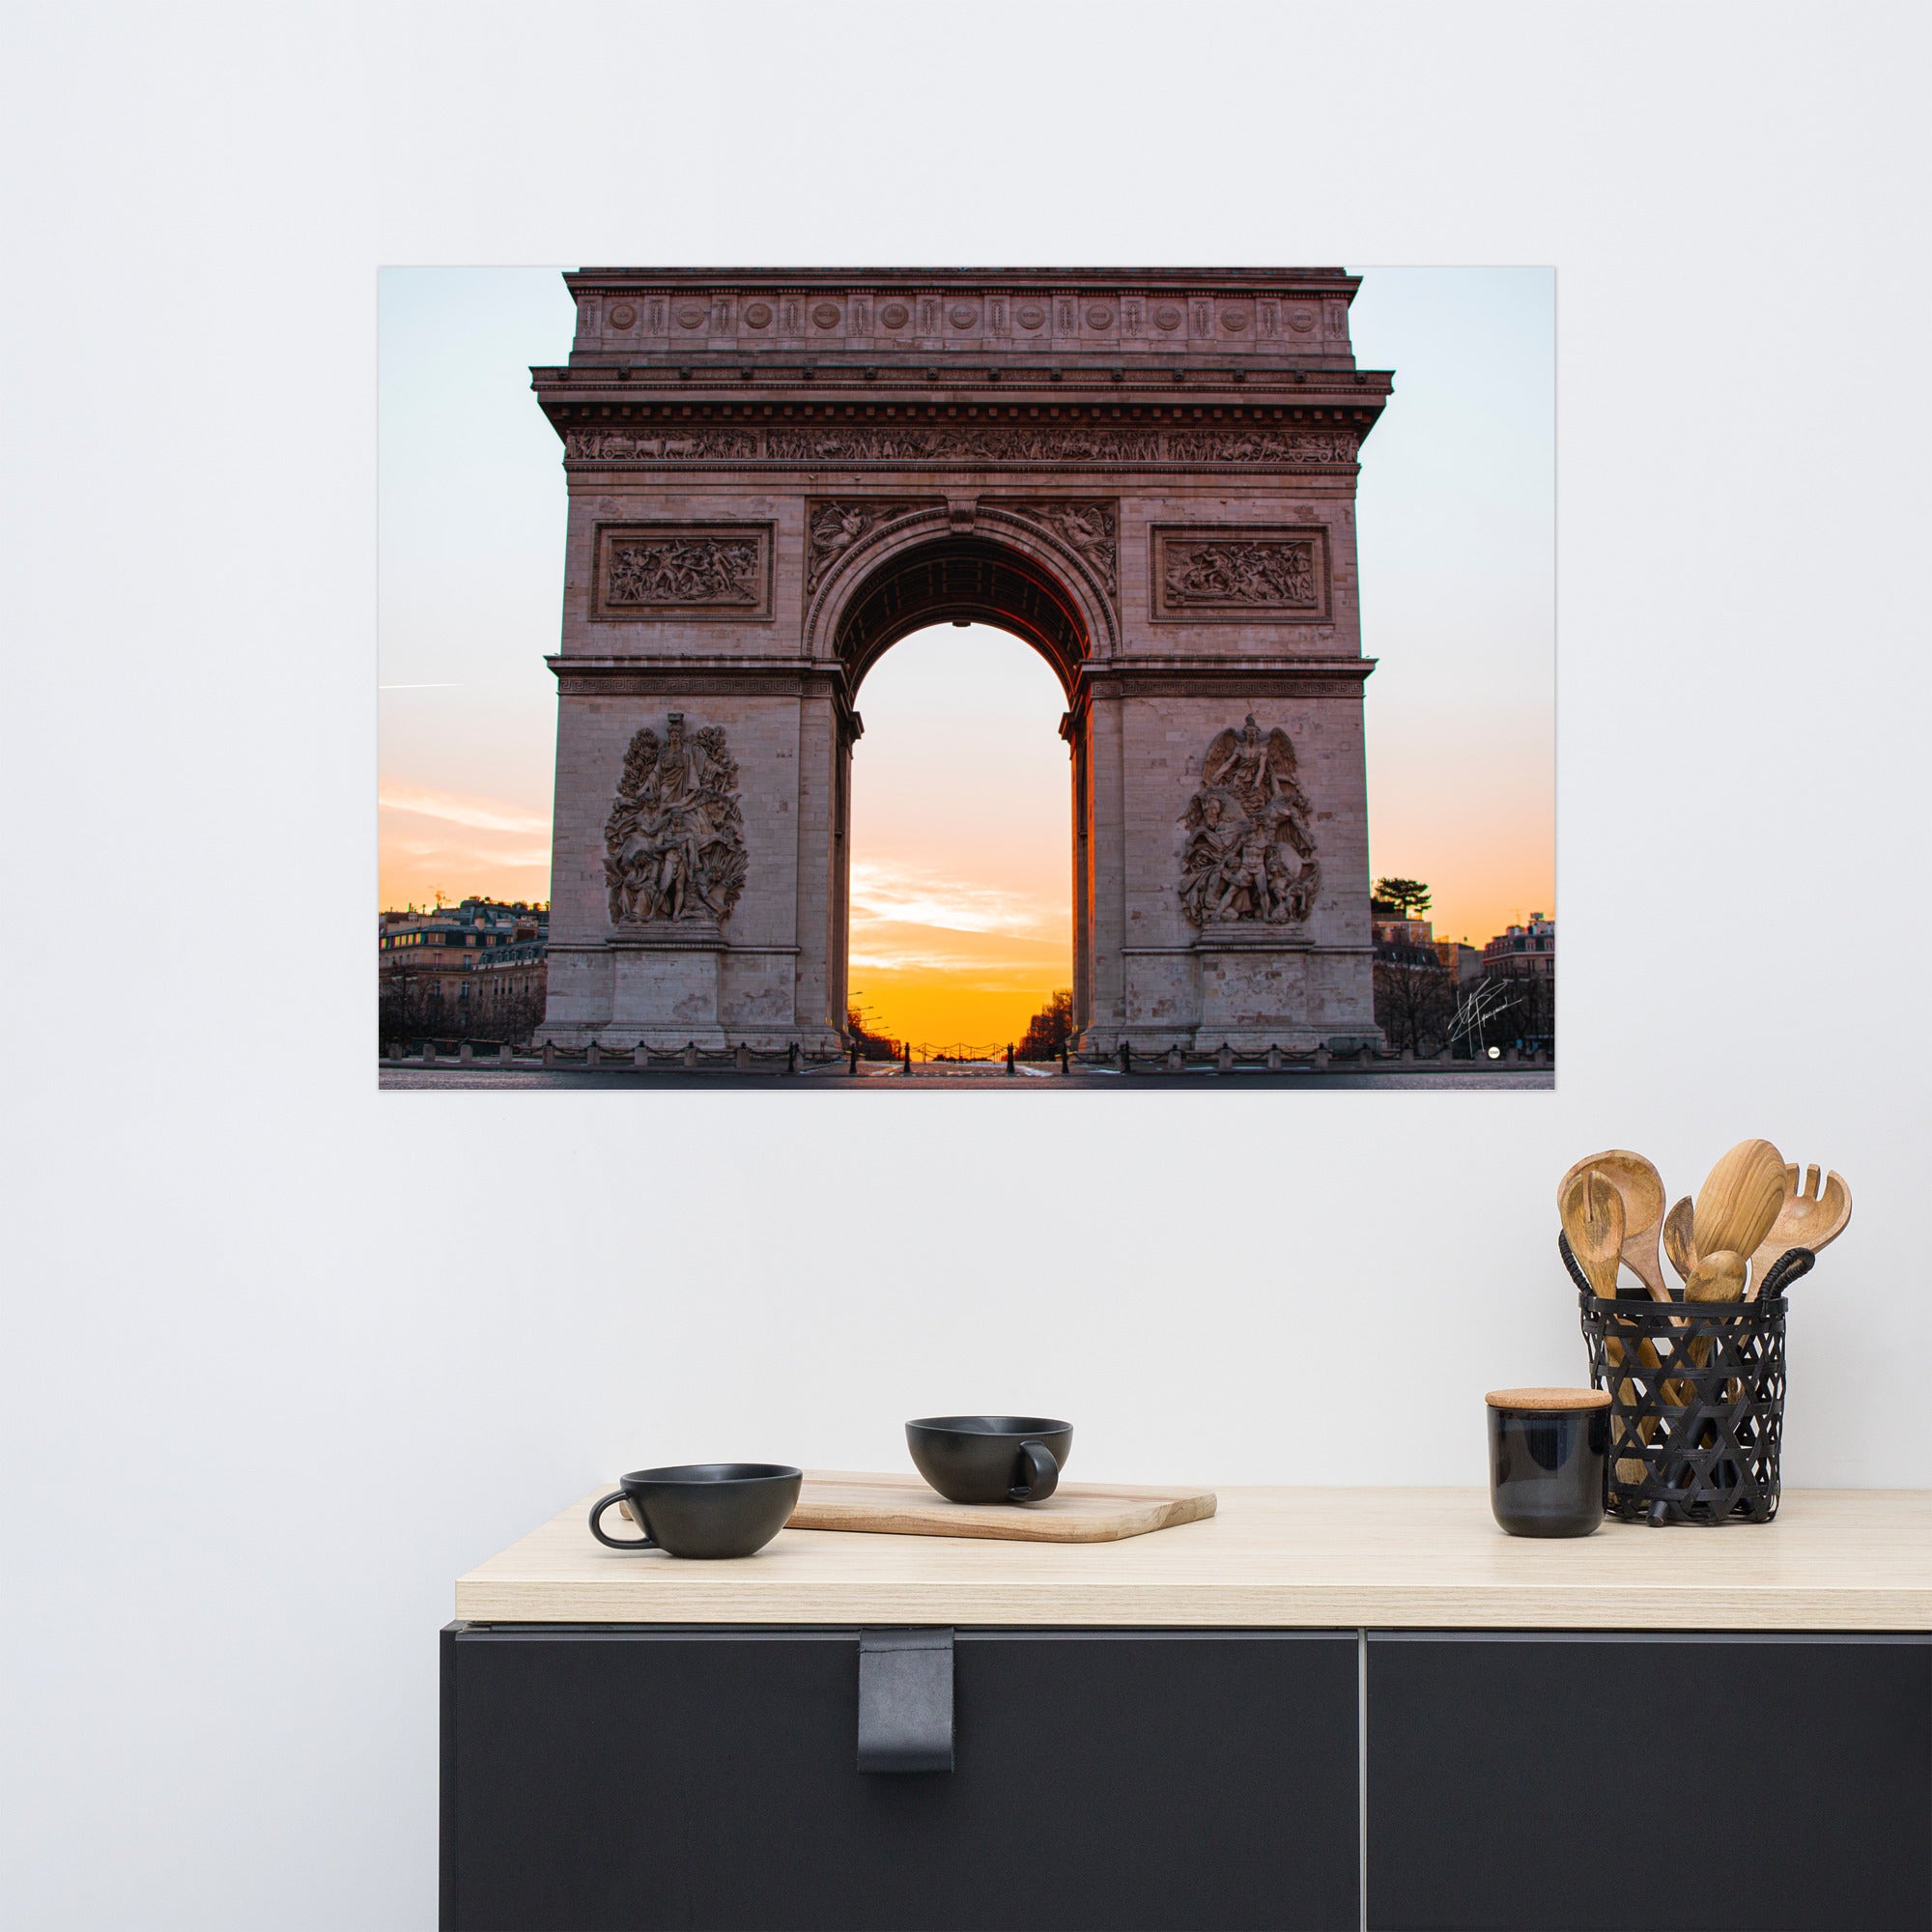 L'Arc de Triomphe de Paris au lever du soleil, ses contours majestueux se découpant contre un ciel orangé, symbolisant la gloire et l'espoir d'une nouvelle journée.